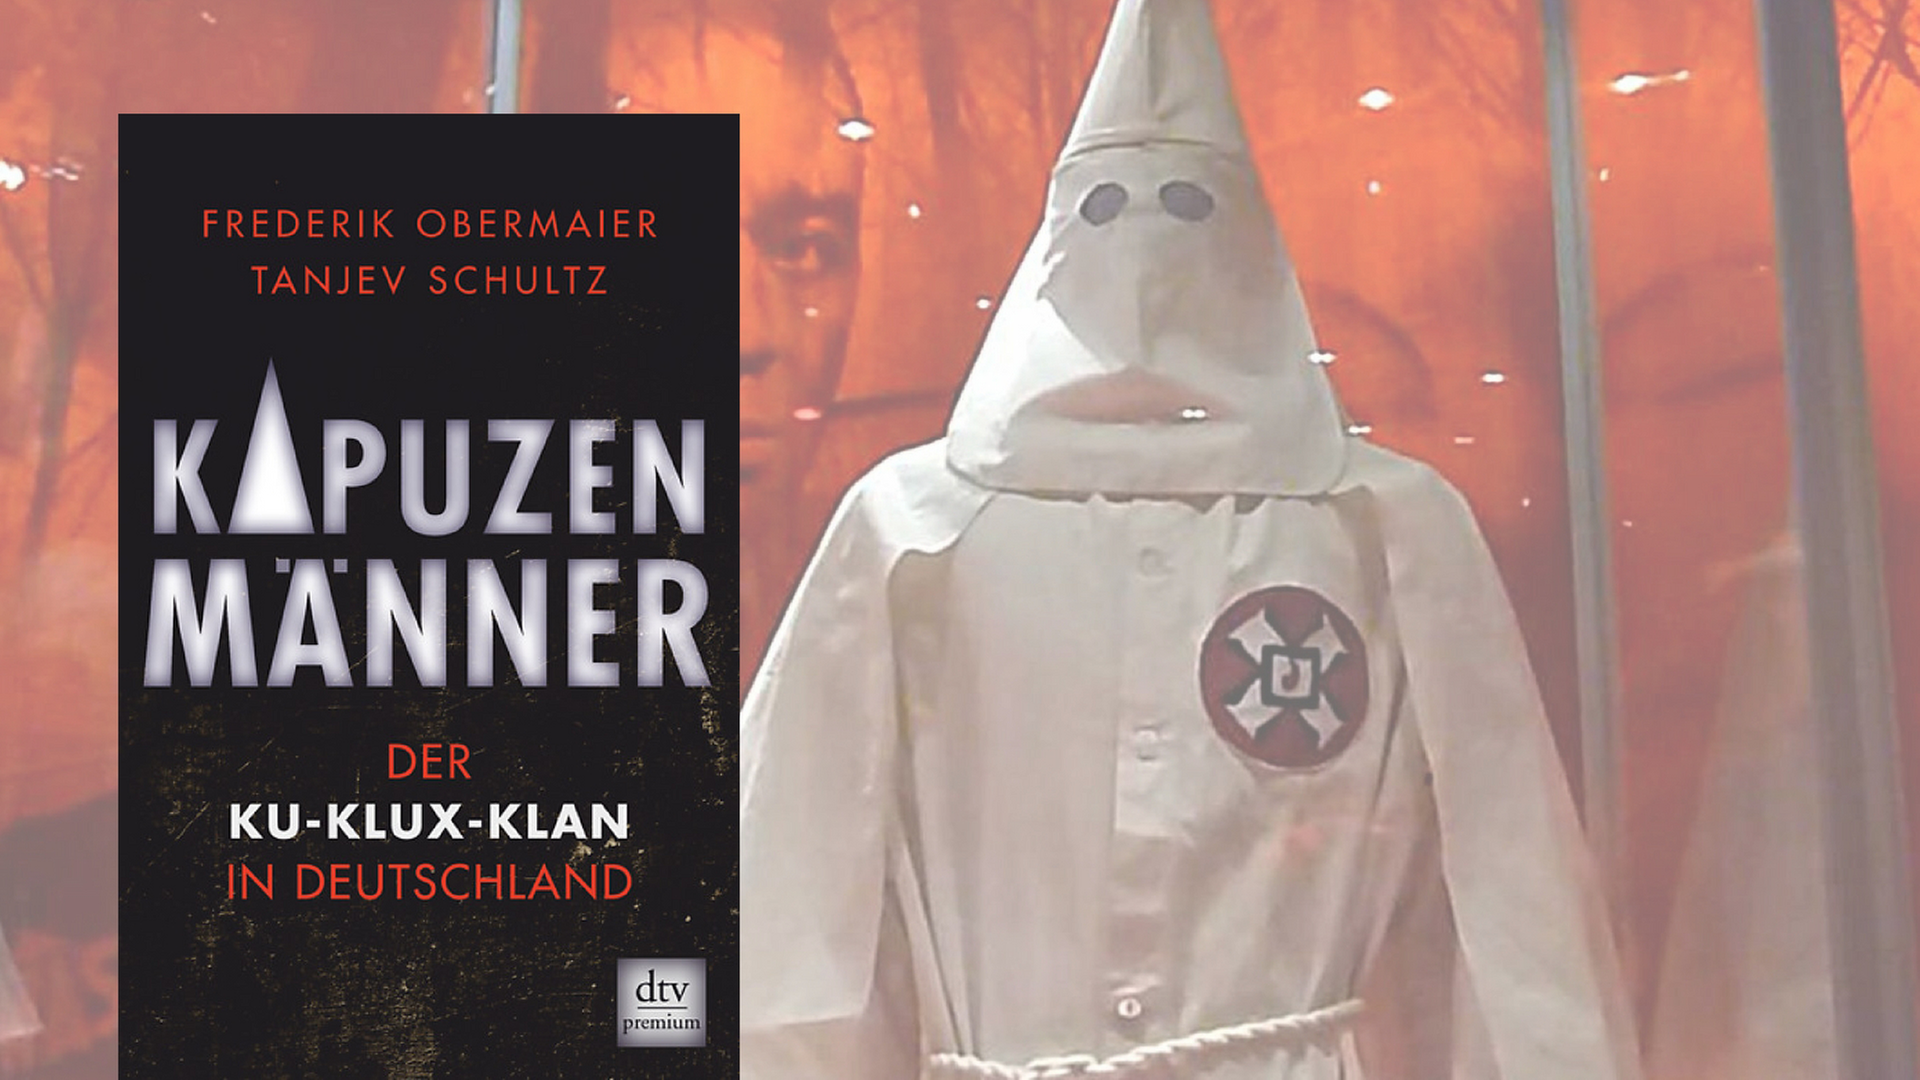 Die Robe eines Ku-Klux-Klan-Mitglieds in einer Ausstellung in Washington.